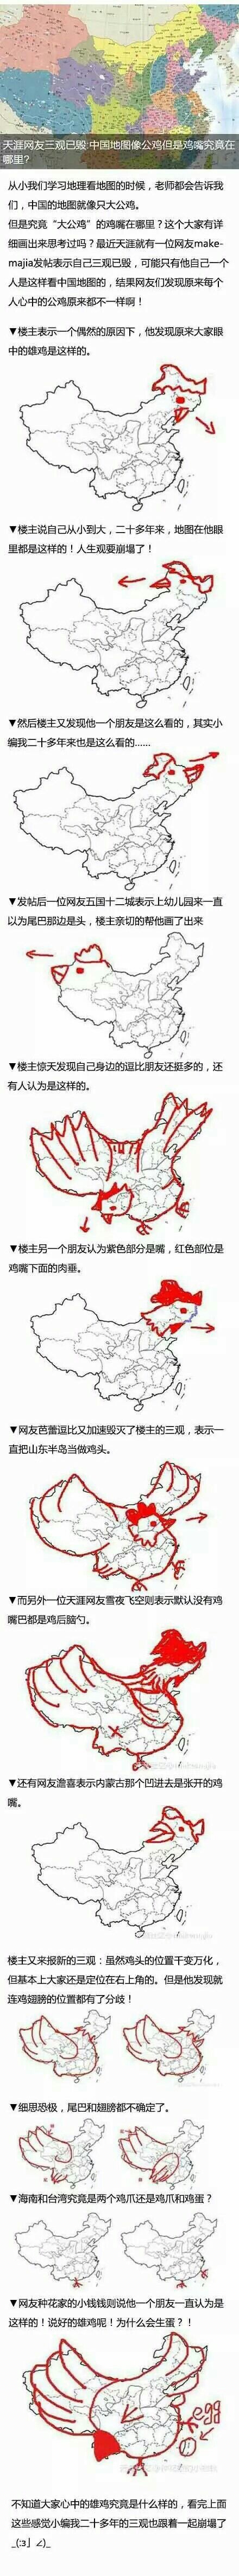 中國地圖的公雞